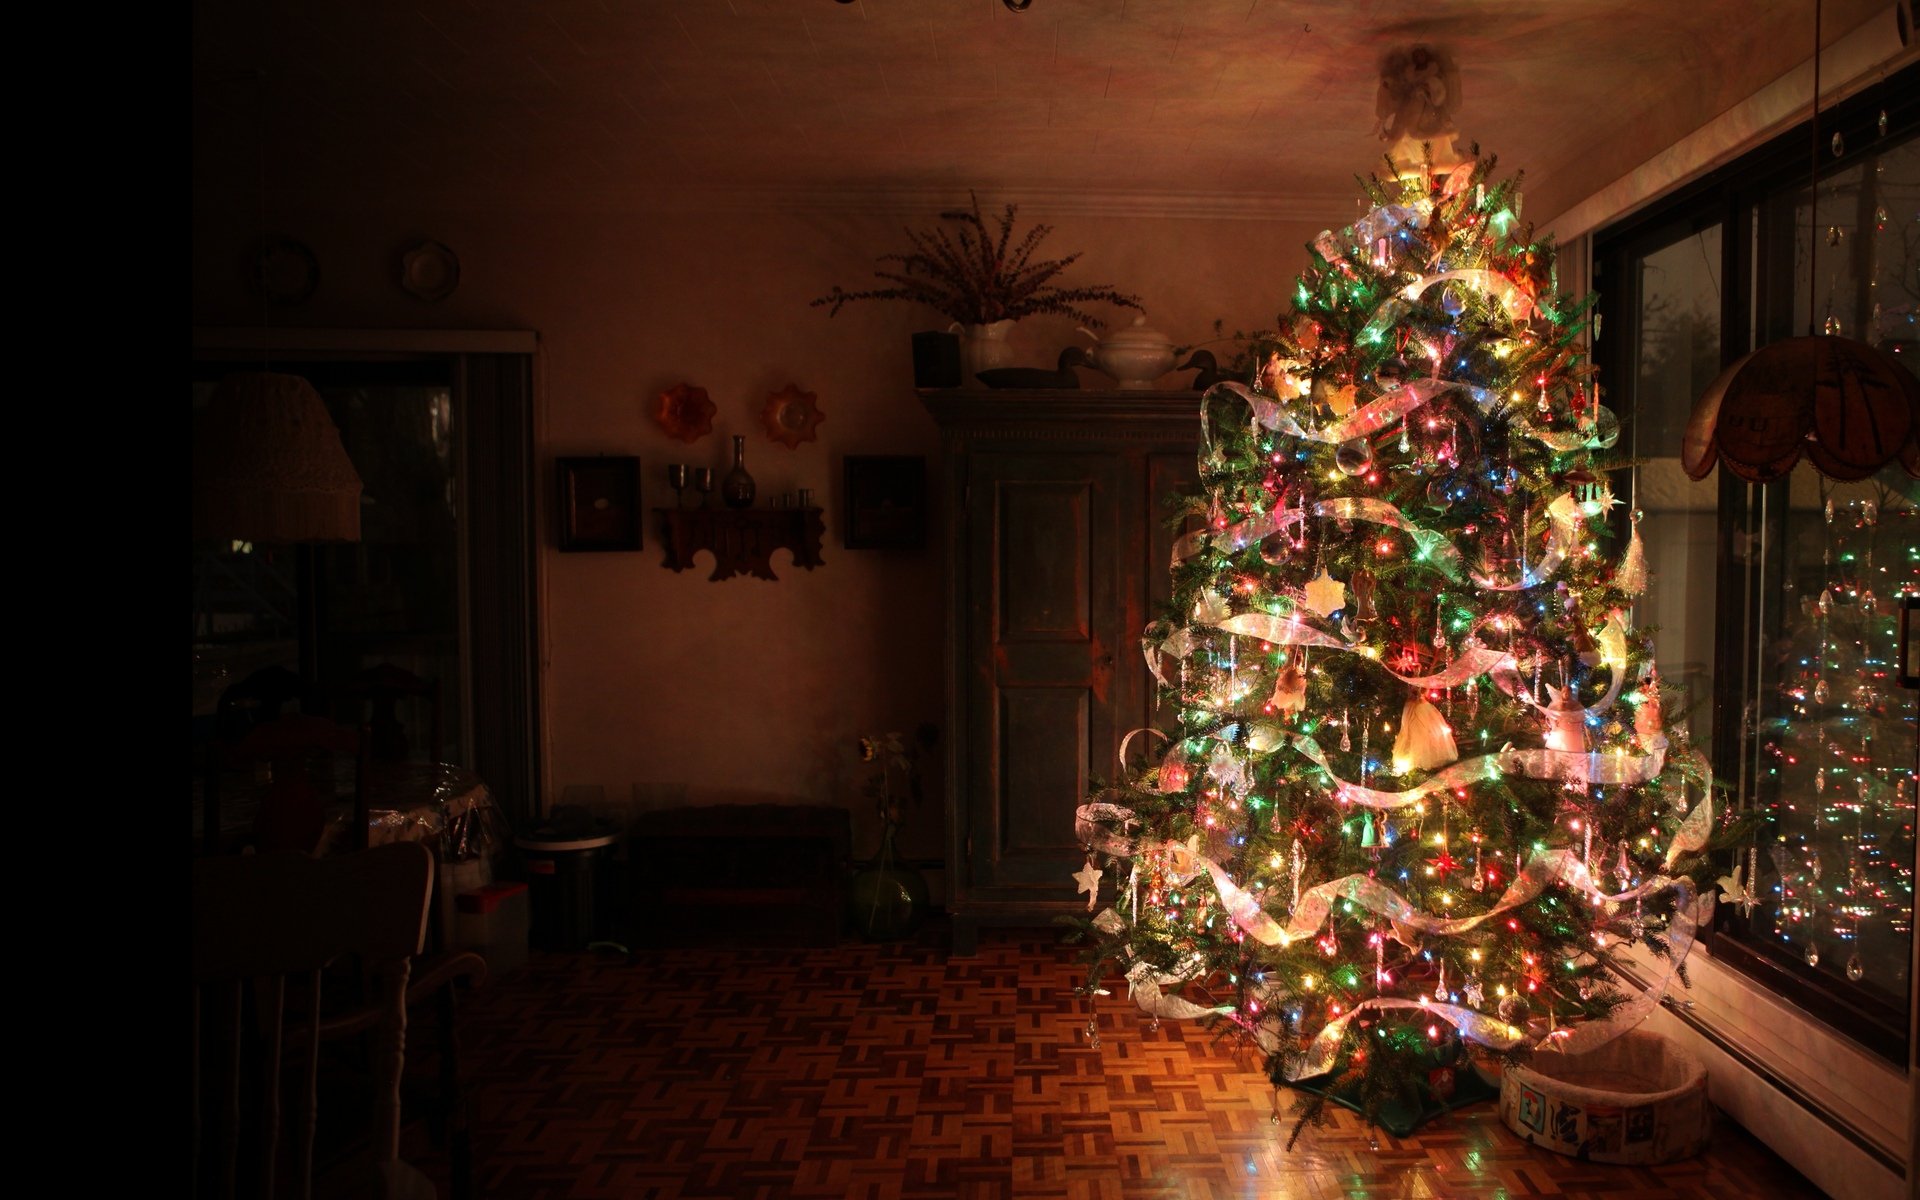 Cây thông Noel là biểu tượng không thể thiếu trong Lễ hội Giáng sinh. Bức ảnh chụp cây thông Noel cùng đèn LED lung linh sẽ mang đến cho bạn thật nhiều niềm vui và cảm xúc. Hãy xem những khoảnh khắc tuyệt vời này và cảm nhận sự đẹp đẽ và yên bình của mùa lễ hội này.